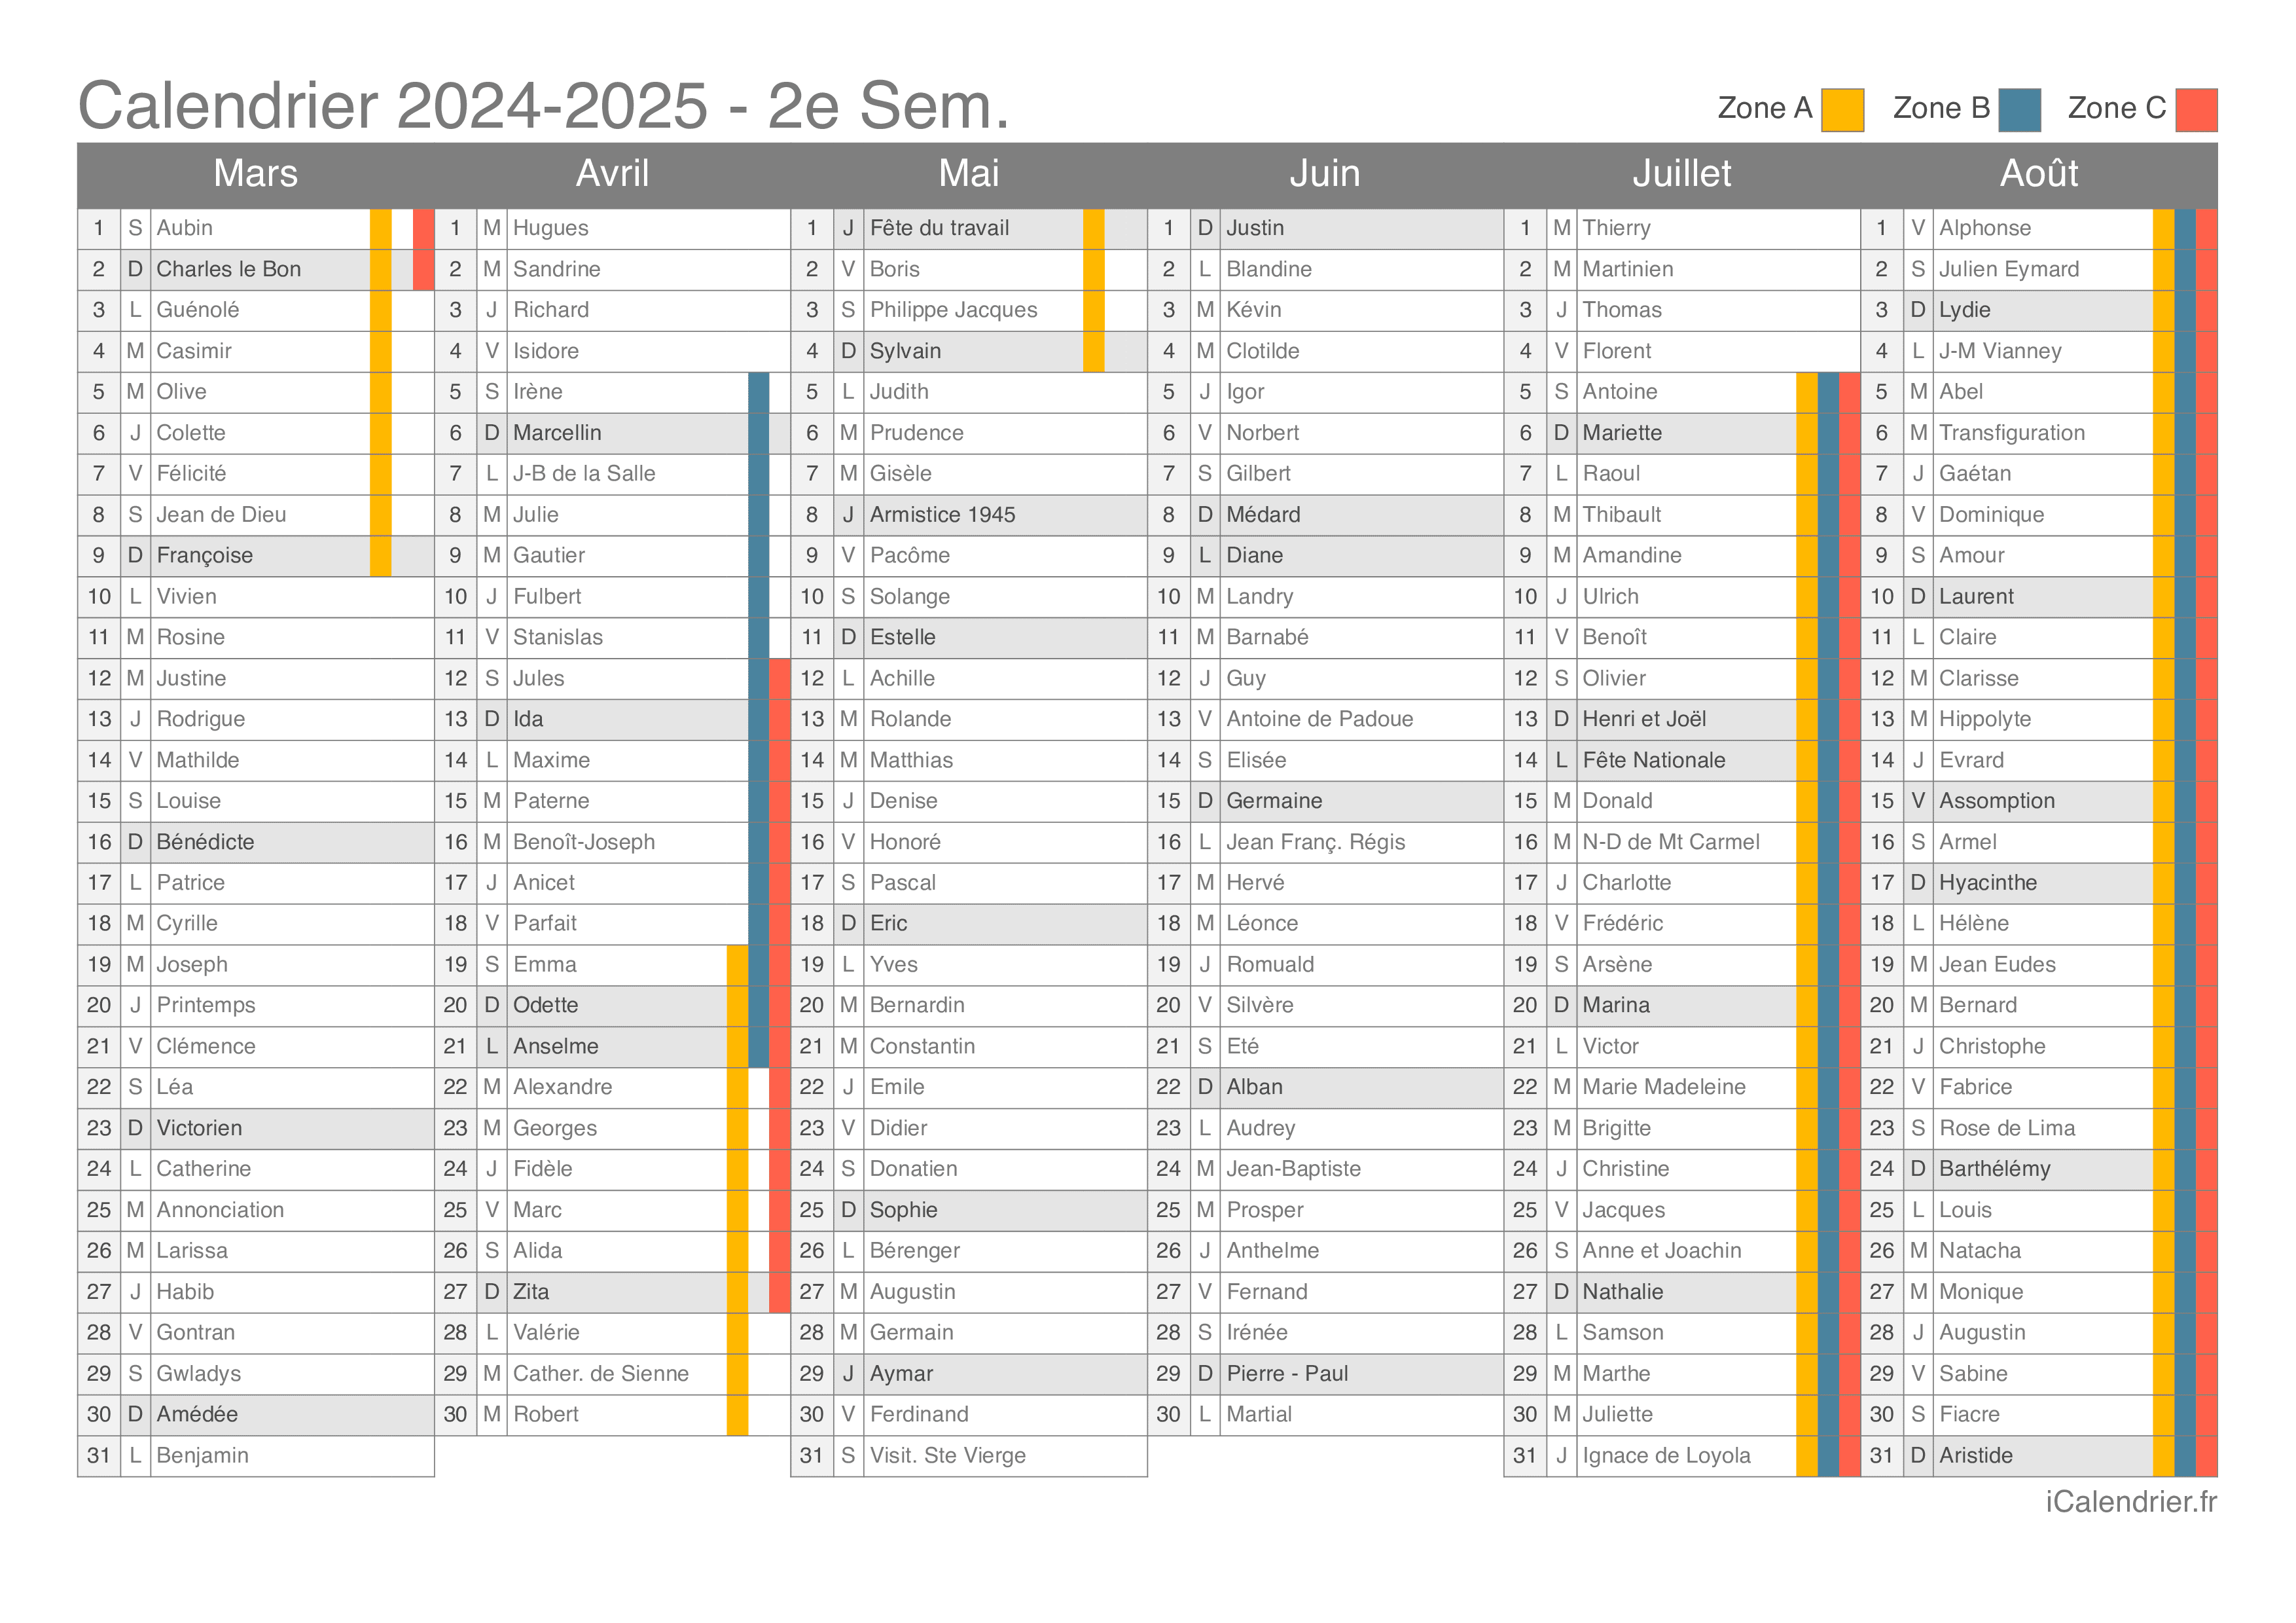 Vacances scolaires 2024-2025 - Dates et calendrier - iCalendrier